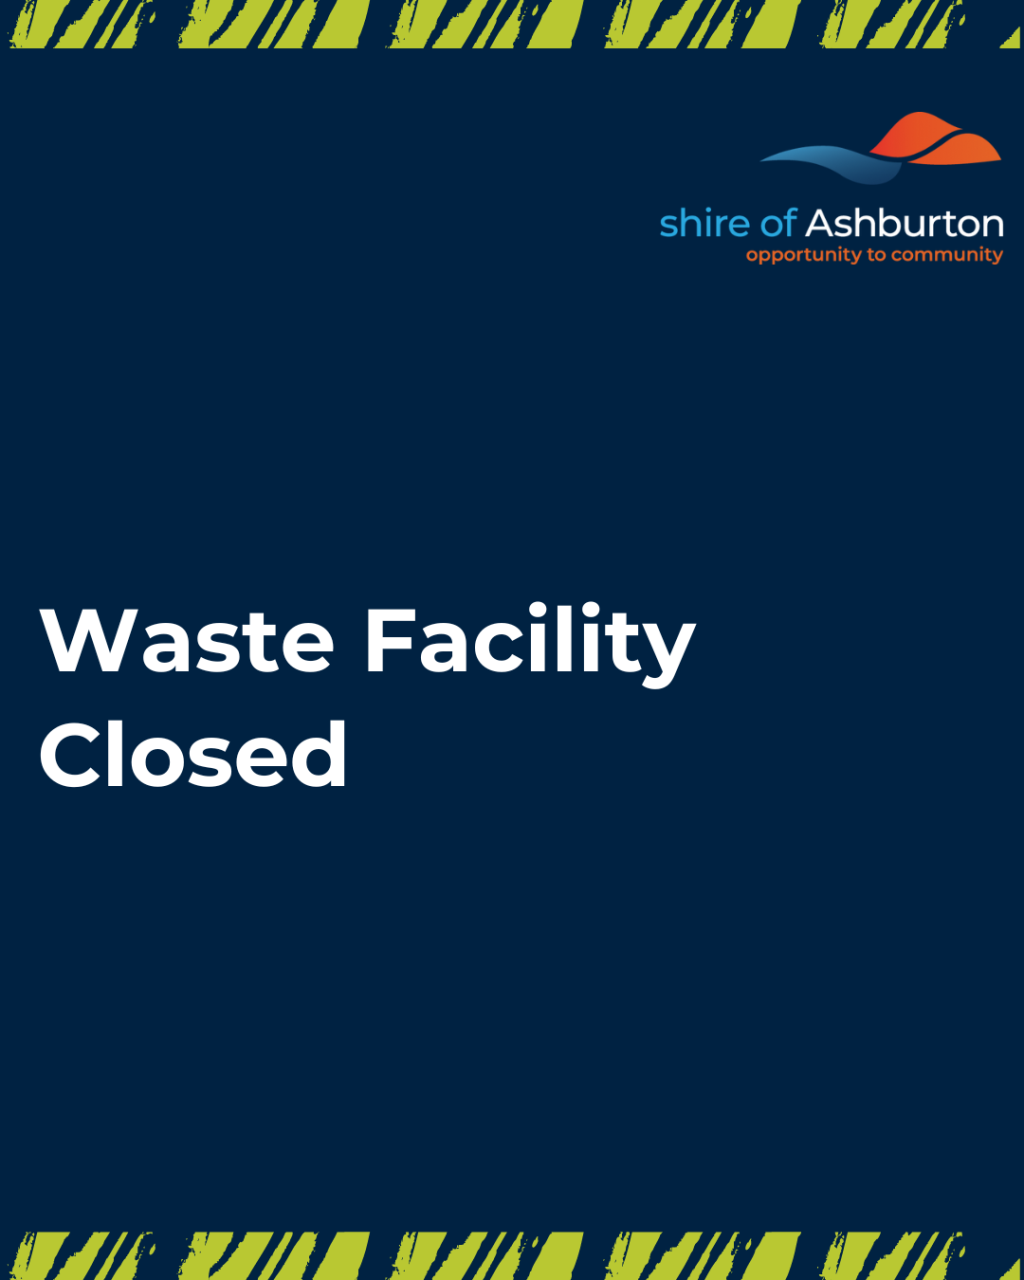 Paraburdoo Waste Facility Closed